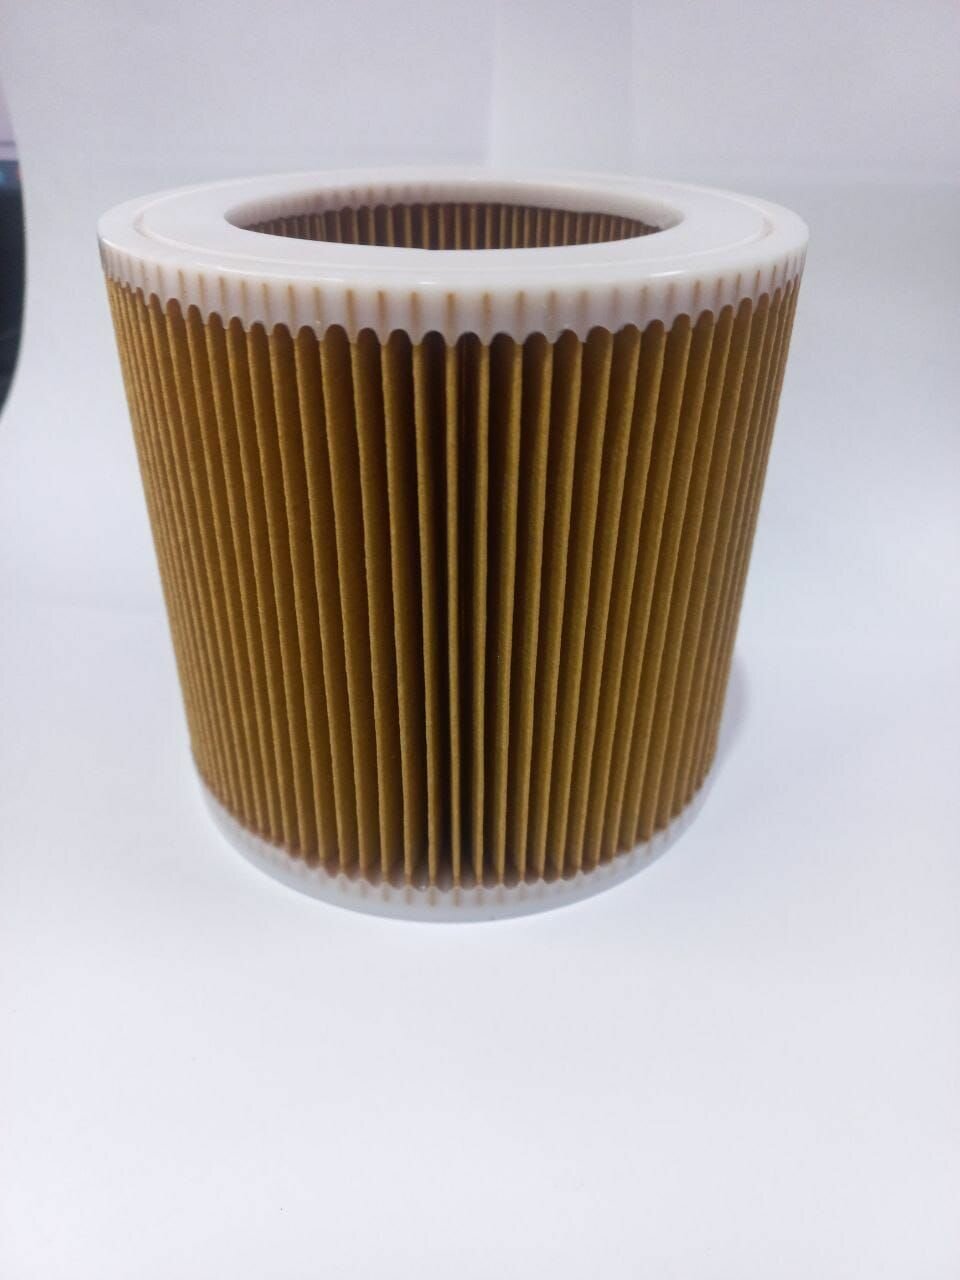 Фильтр складчатый целлюлозный 32 P/LY для пылесоса KARCHER WD 2 WD 3 MV 2 MV 3